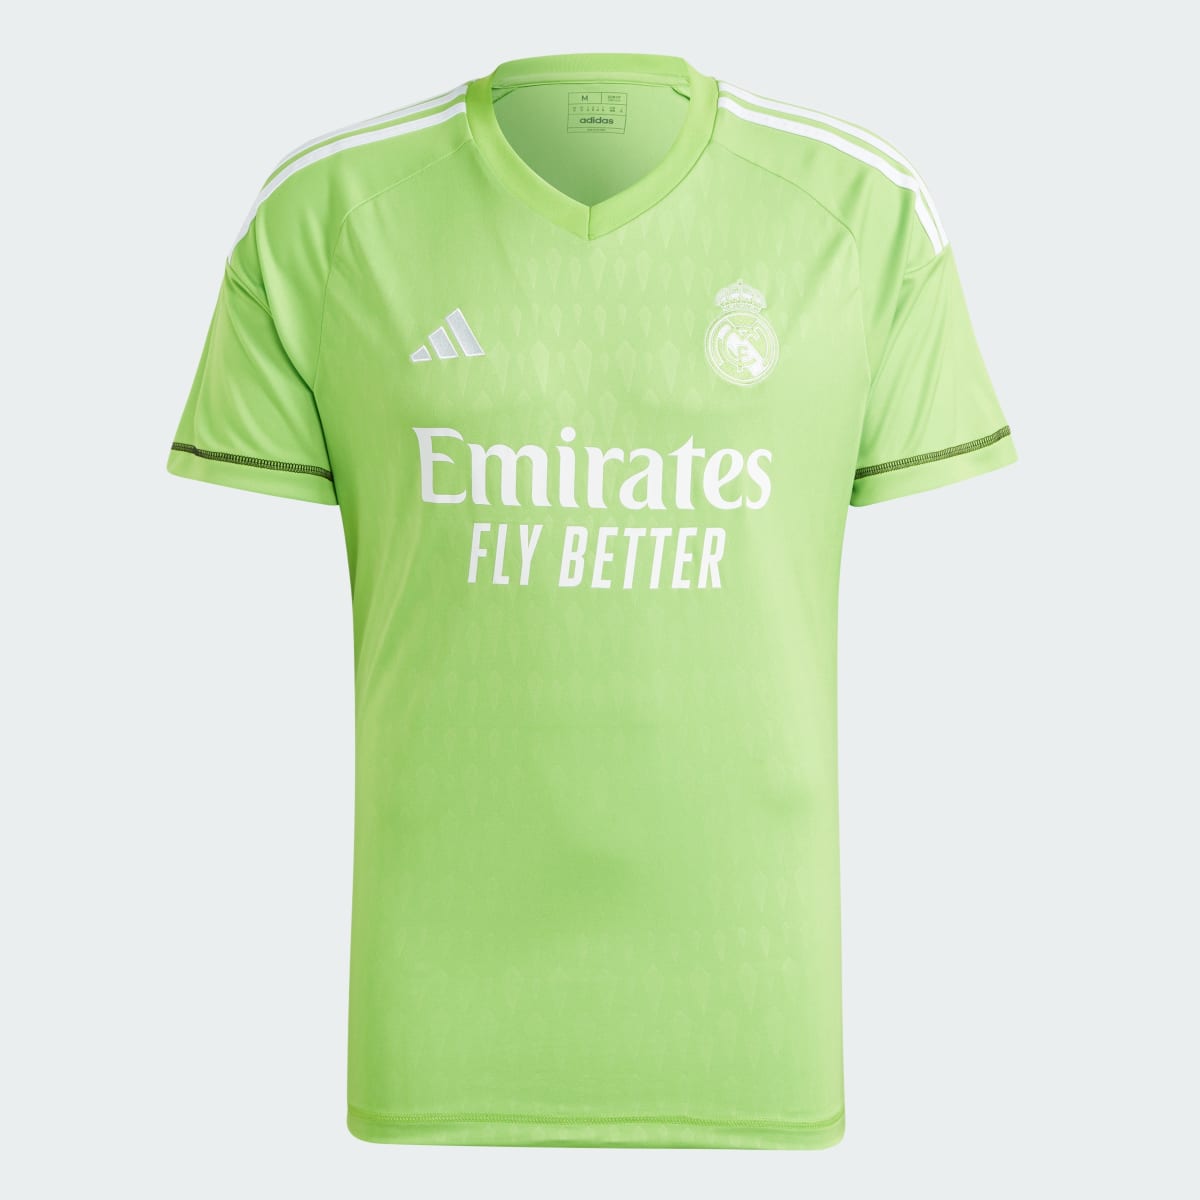 Adidas Camisola Principal de Guarda-redes Condivo 22 do Real Madrid. 5